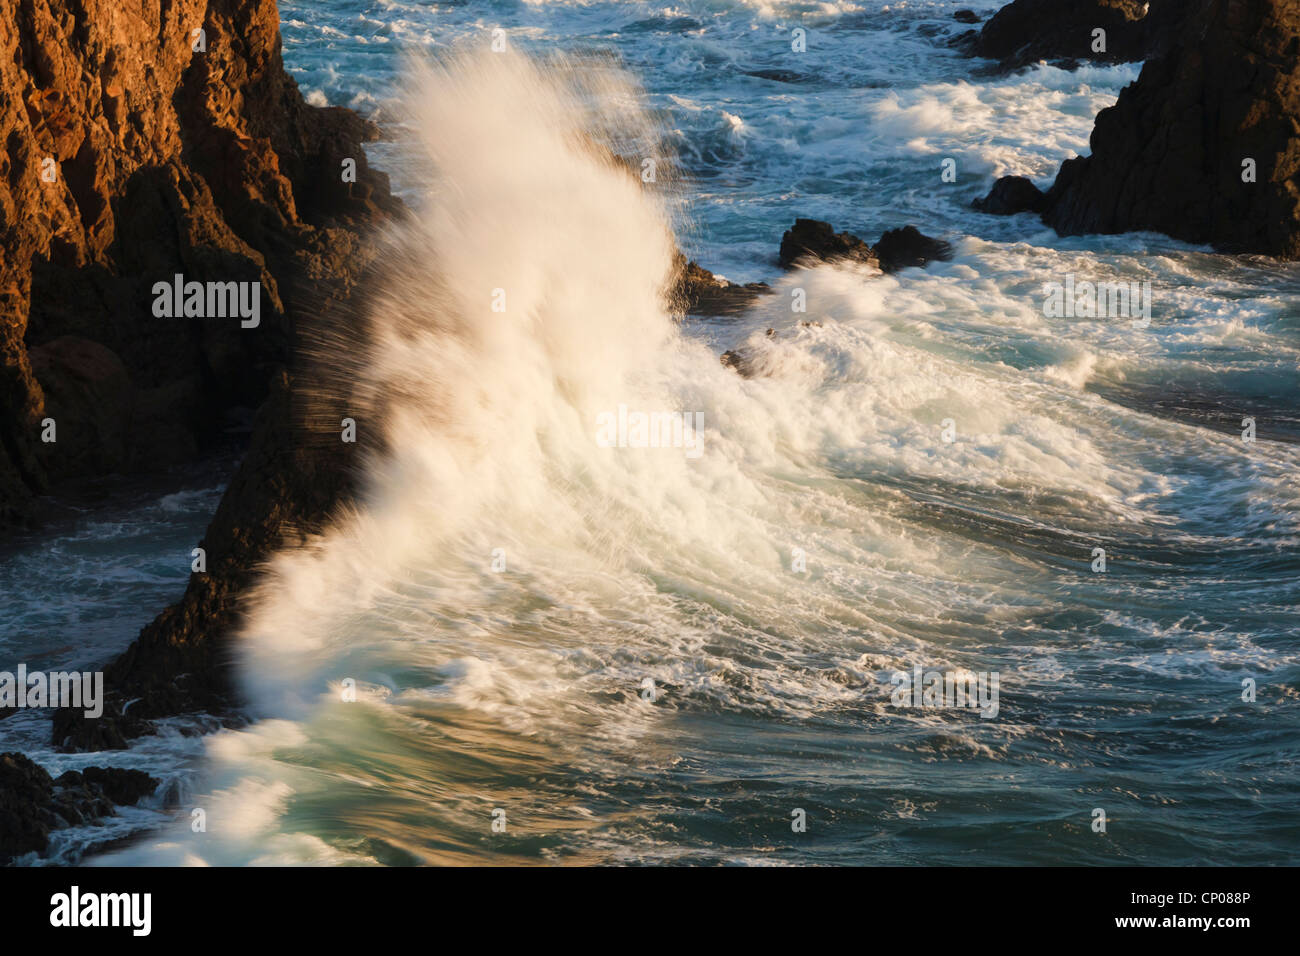 Cabo de Gata-Nijar Natural Park, Almeria Province, Spain. Waves breaking on the Arrecife de las Sirenas, or Mermaid's Reef. Stock Photo